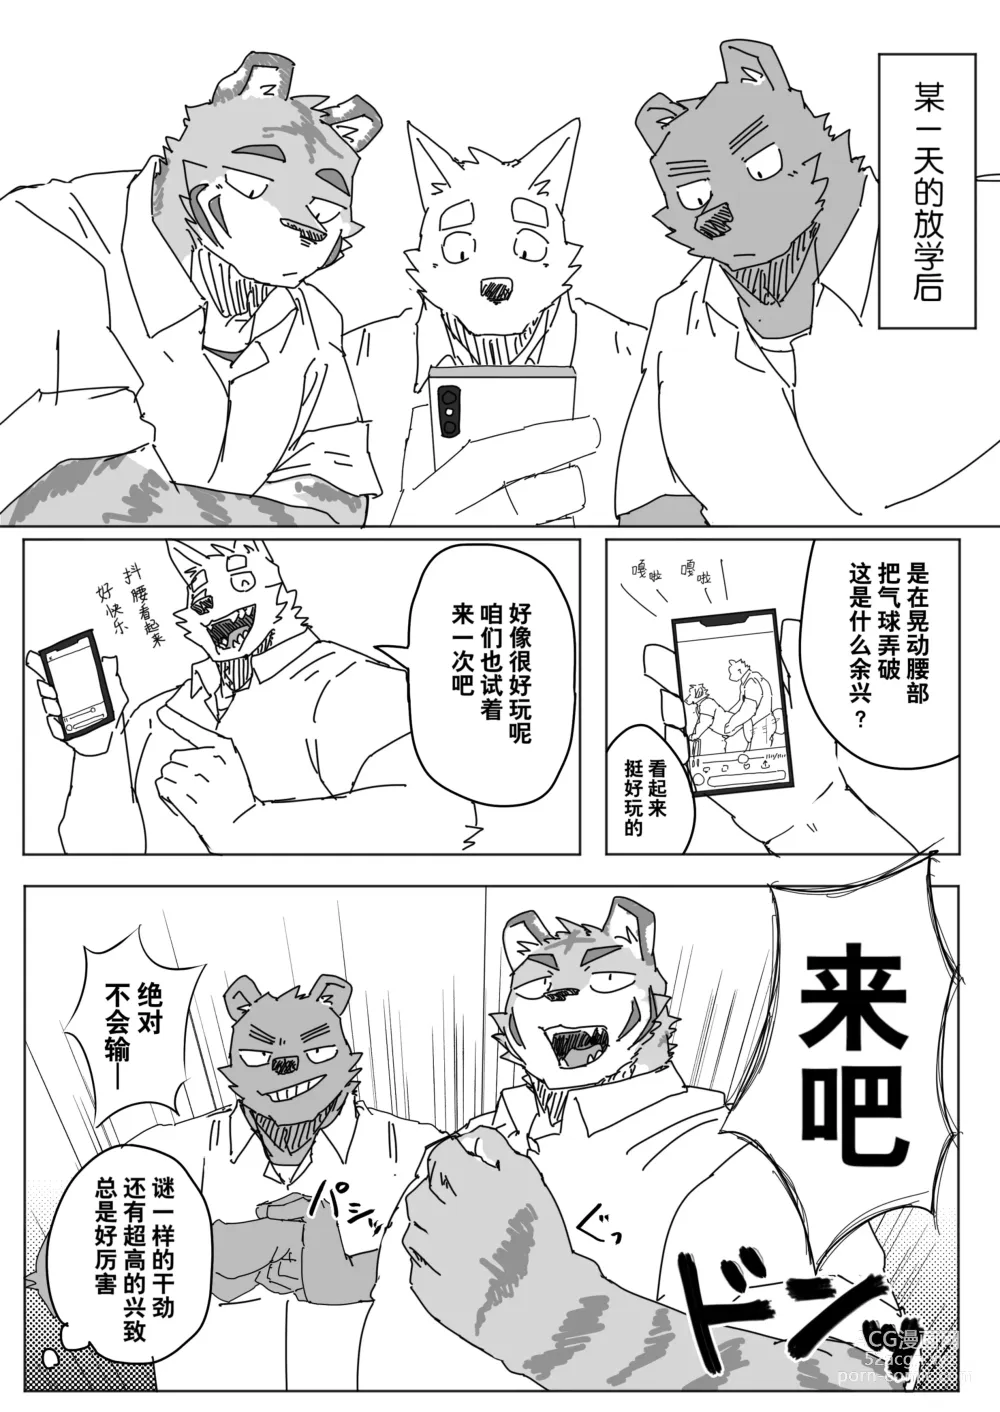 Page 1 of manga 放学后的游戏+后续